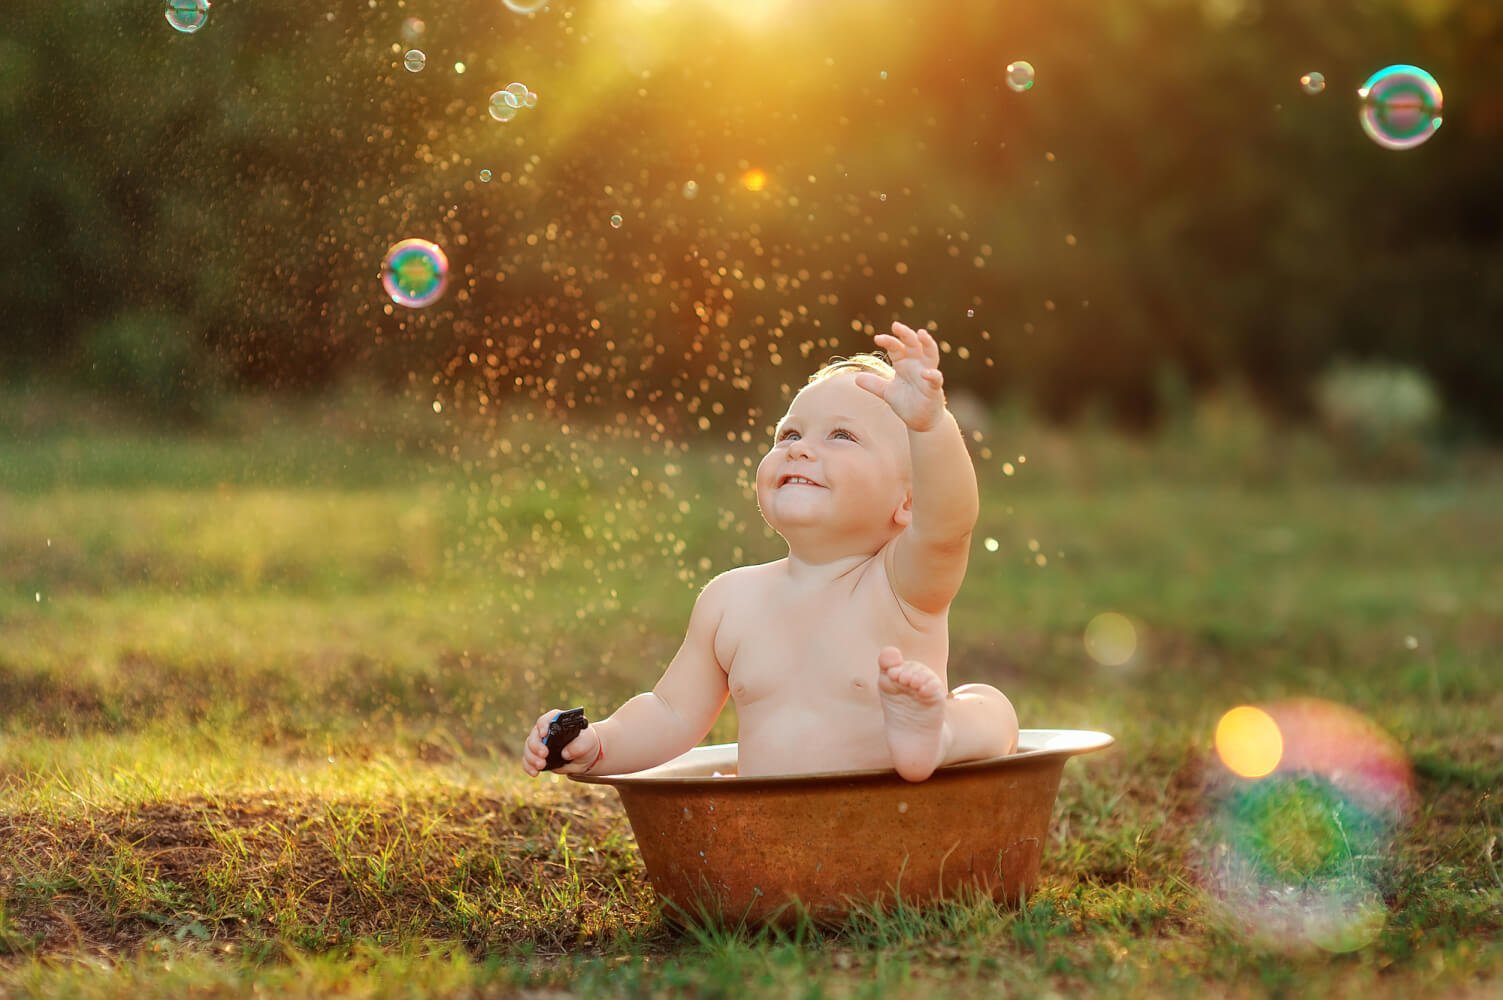 Находить время для радости. Ребенок. Дети радость жизни. Дети радуются солнцу. Радостные моменты в жизни.